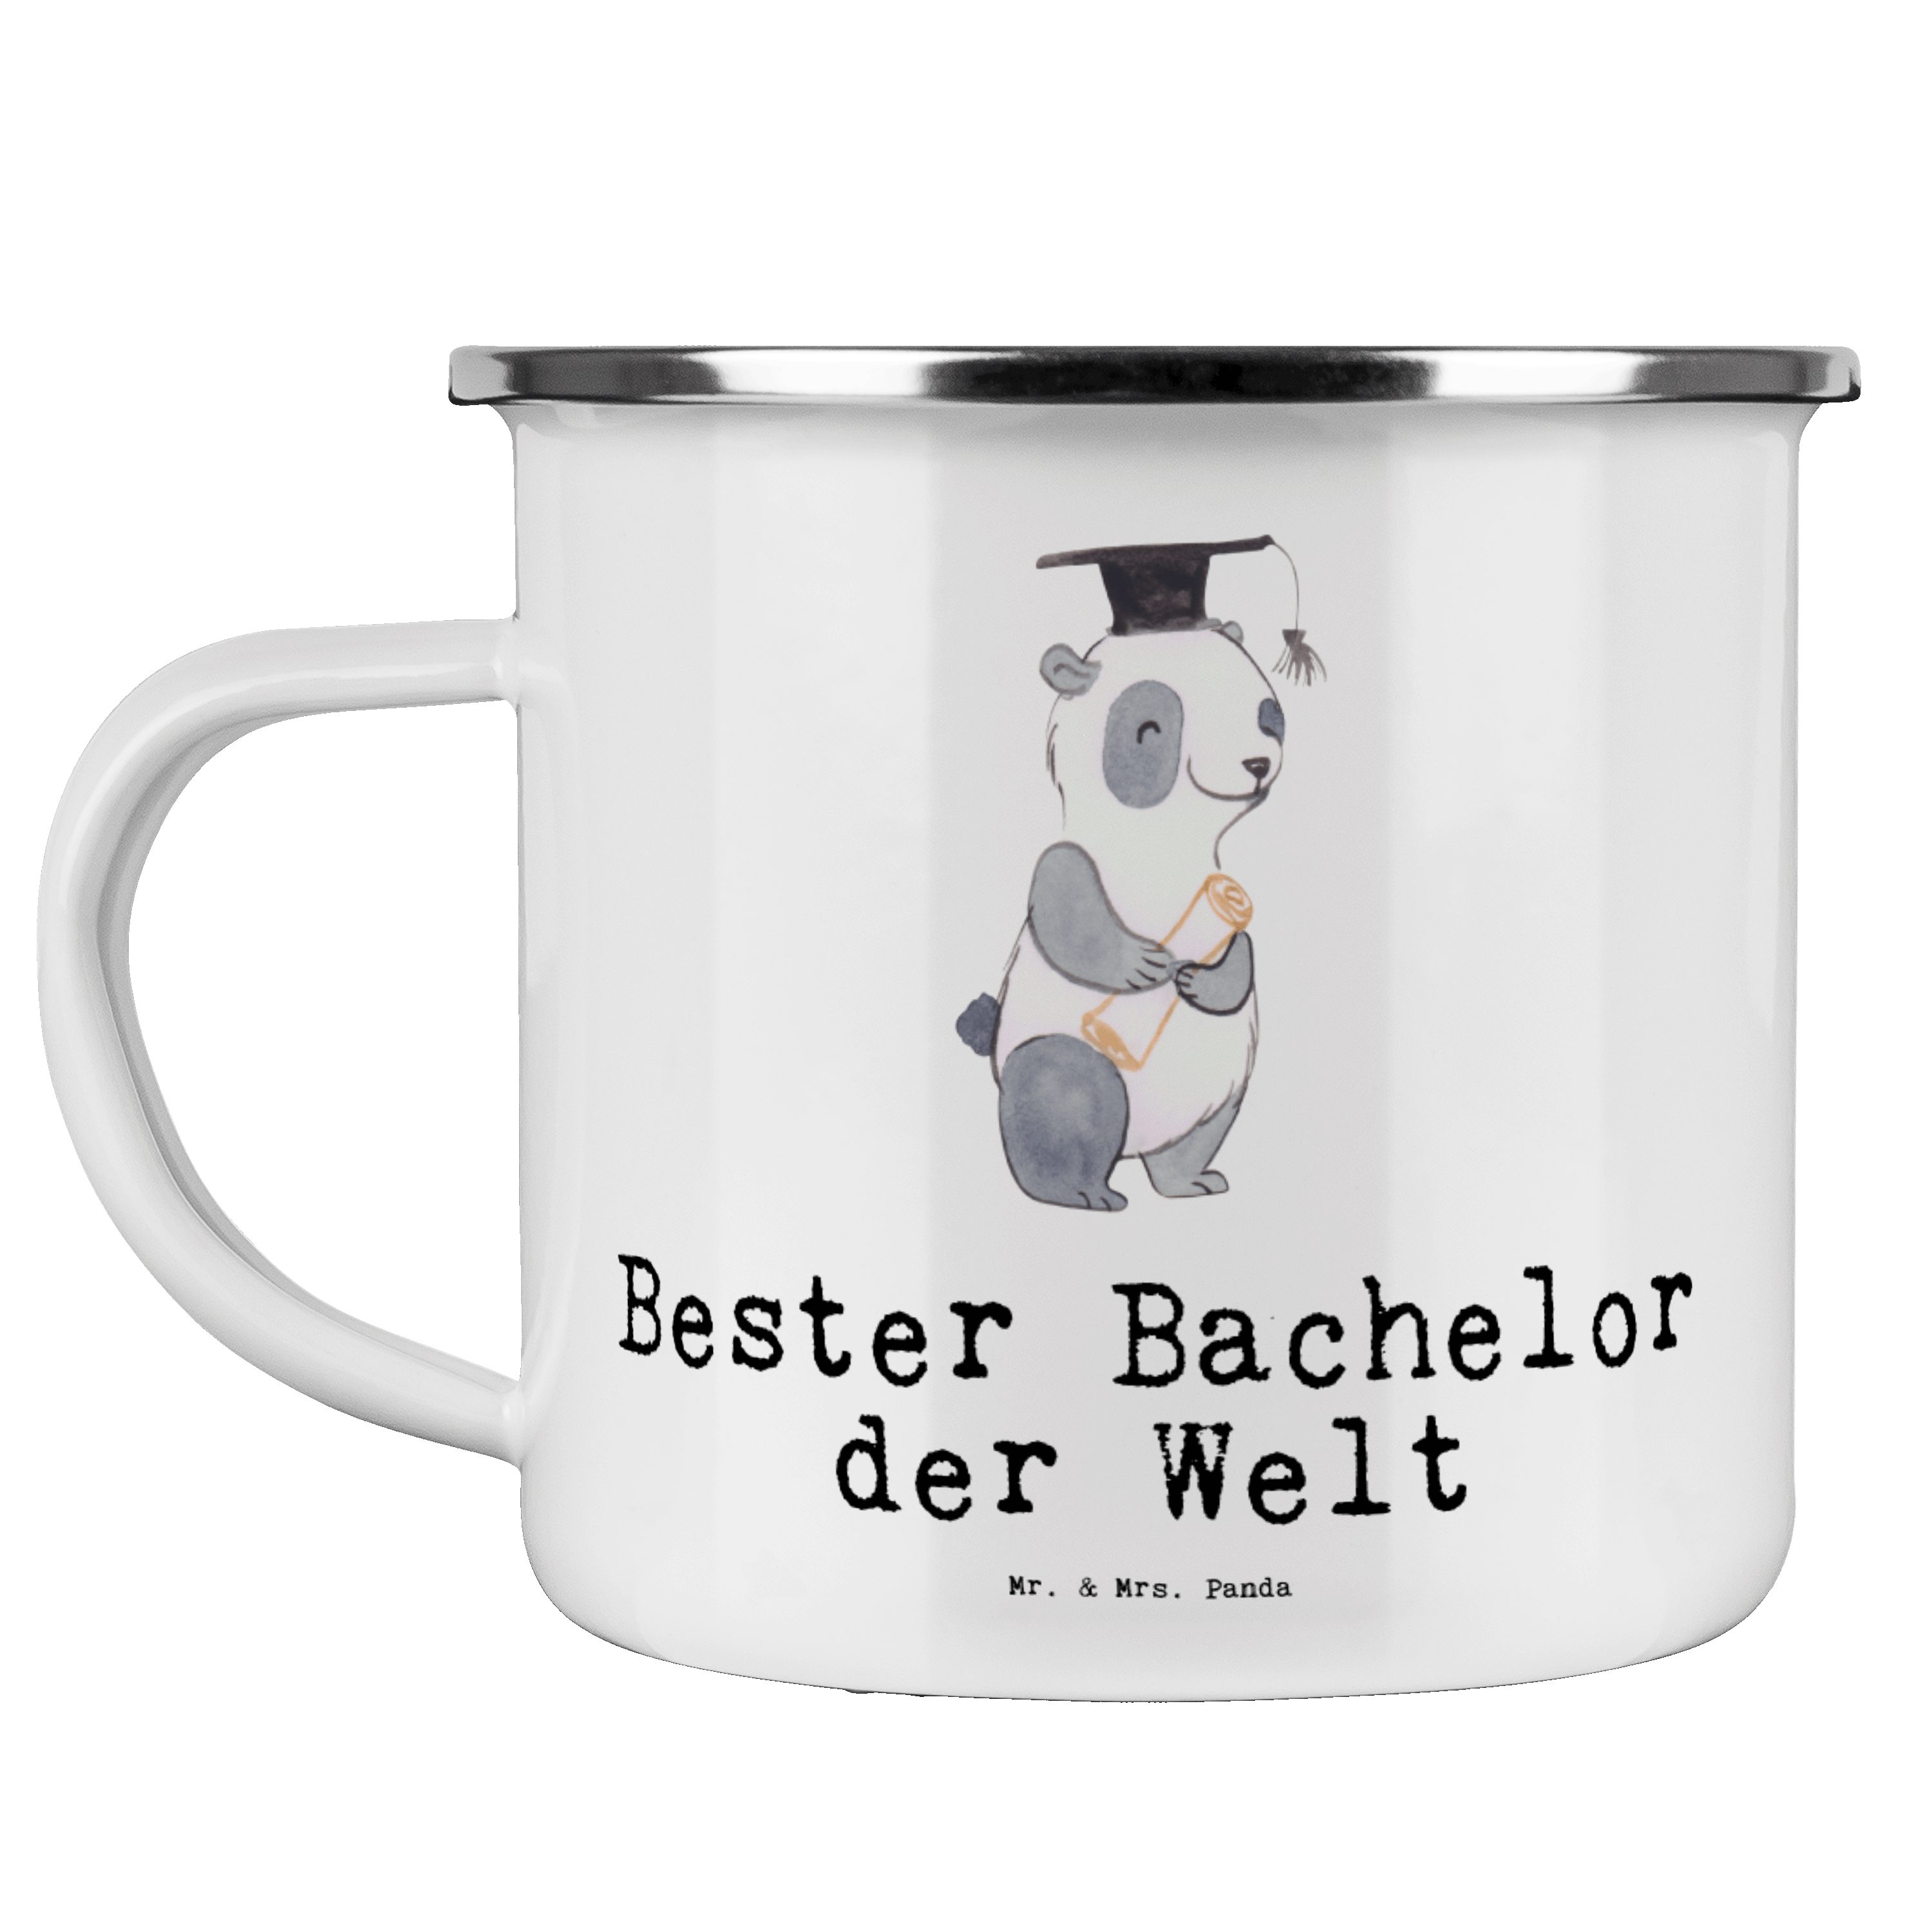 Mr. & Mrs. Panda Becher Panda Bester Bachelor der Welt - Weiß - Geschenk, Freude machen, Trin, Emaille